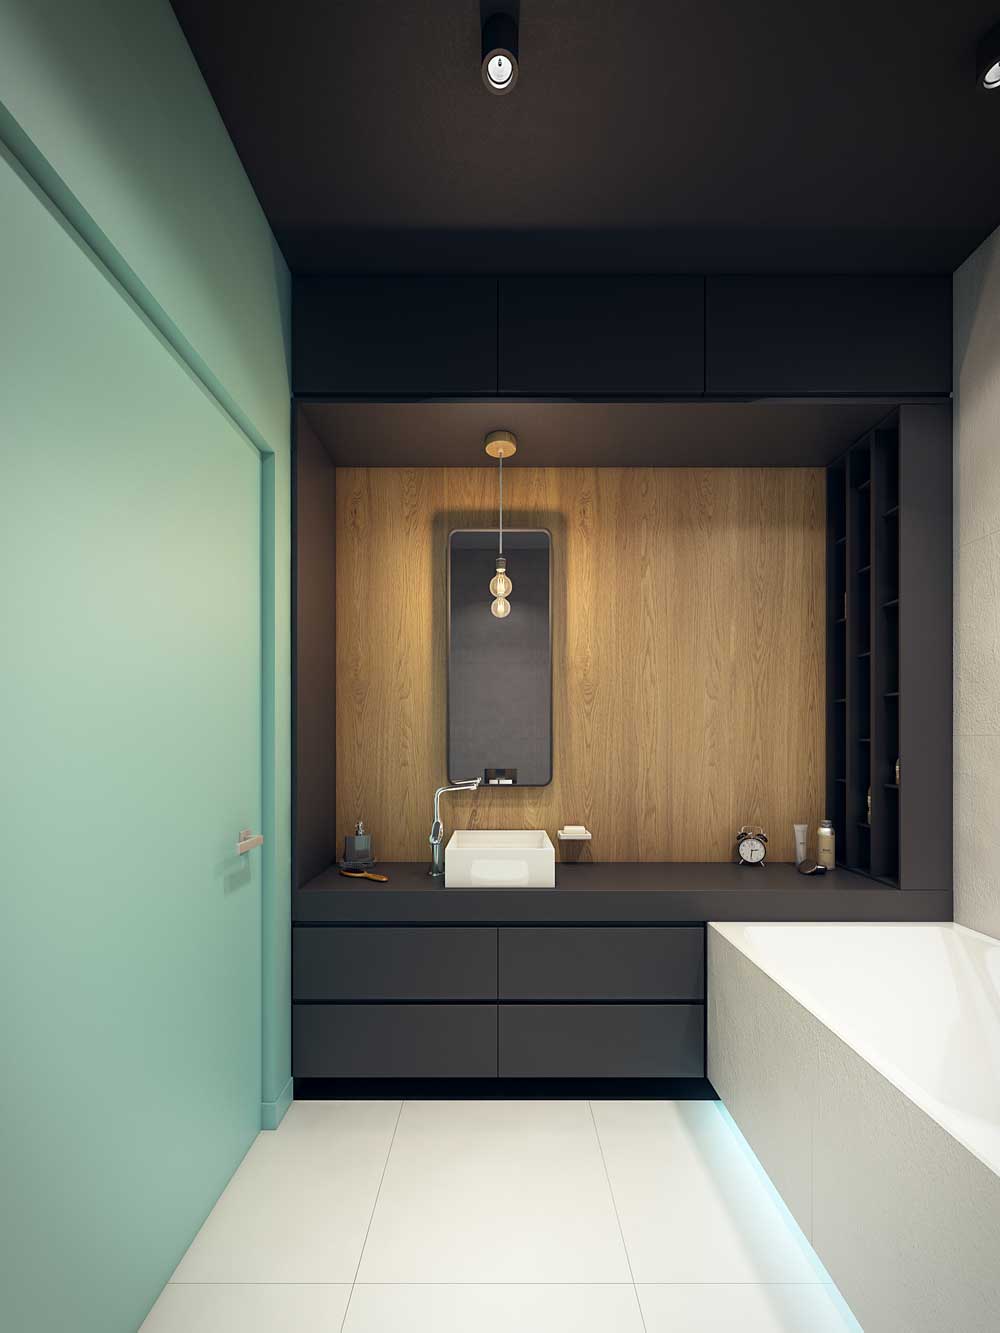 Conception de la salle de bain 6 m² de zonage couleur